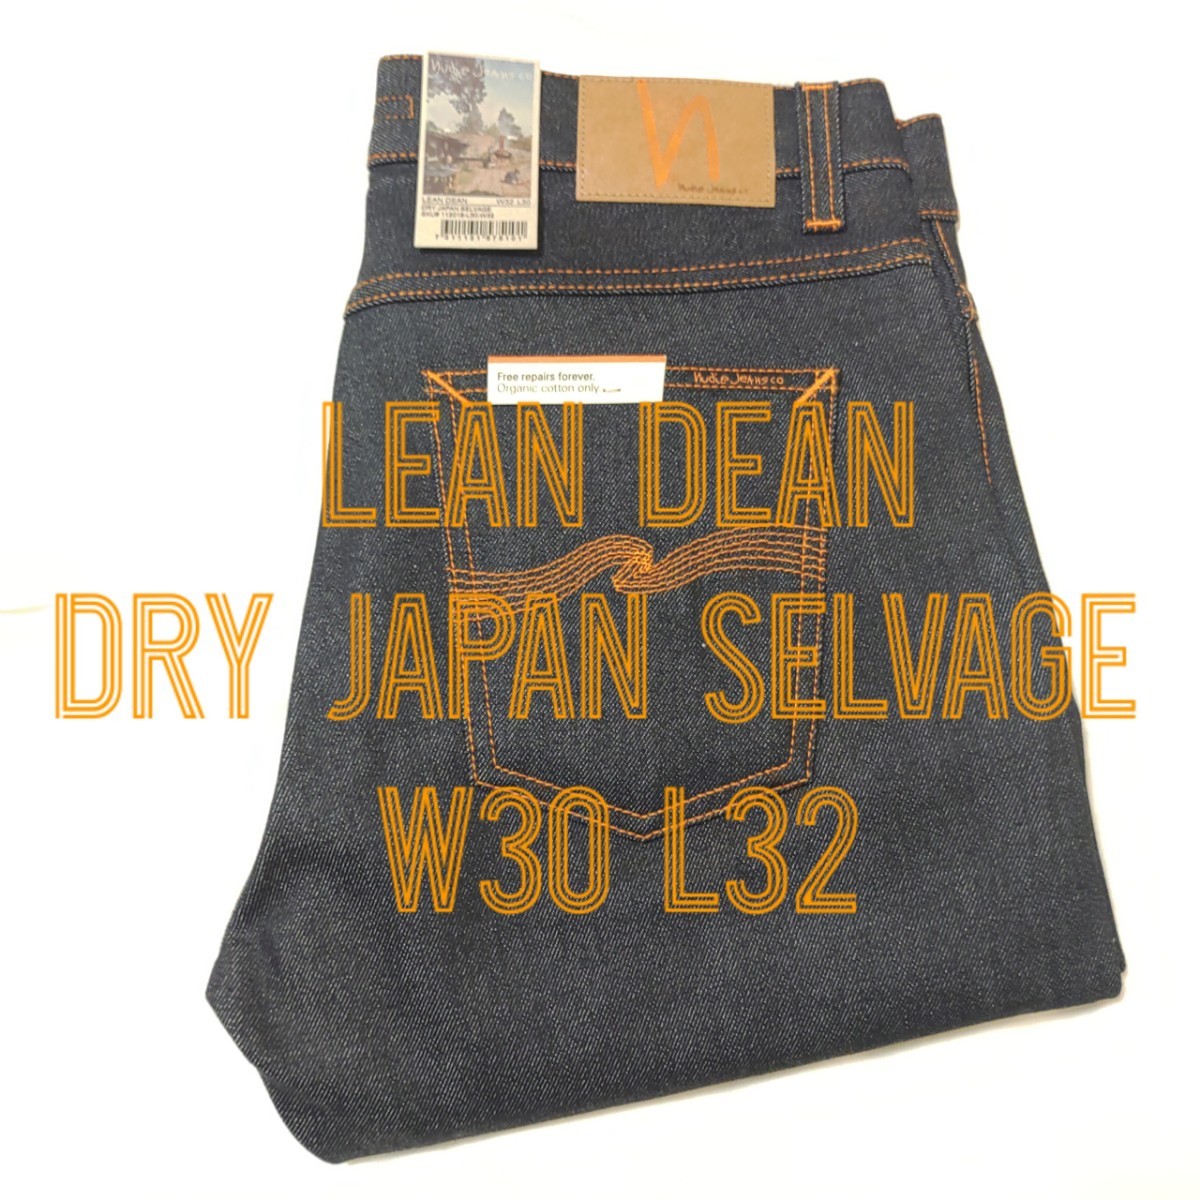 新品 Nudie jeans LEAN DEAN DRY JAPAN SELVAGE W30 L30 ヌーディー